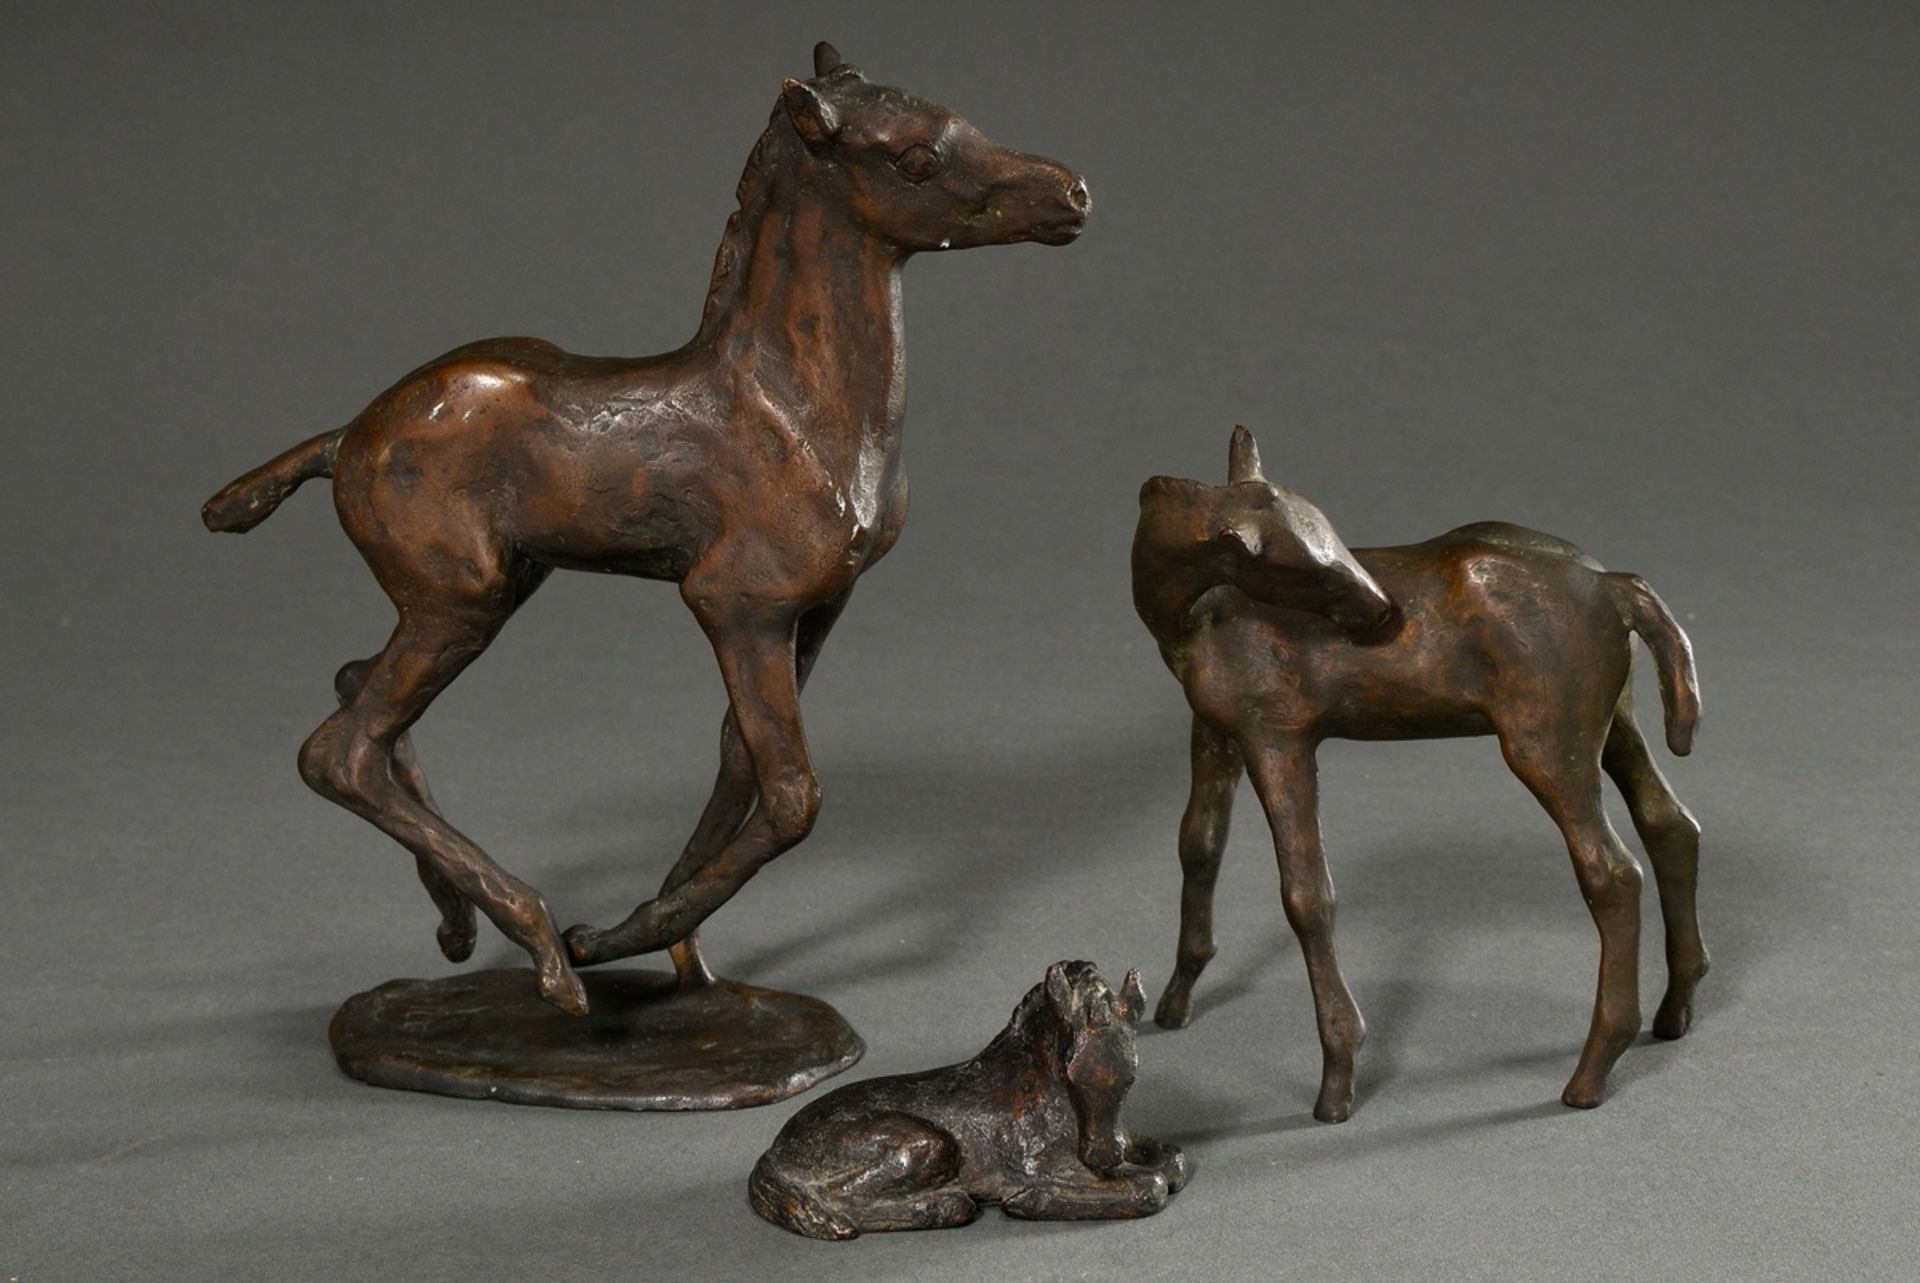 3 Strahlendorff-Eilers, Friderun von (1916-2011) "Foals", patinated bronze, each sign., h. 4.5-18.4 - Image 2 of 9